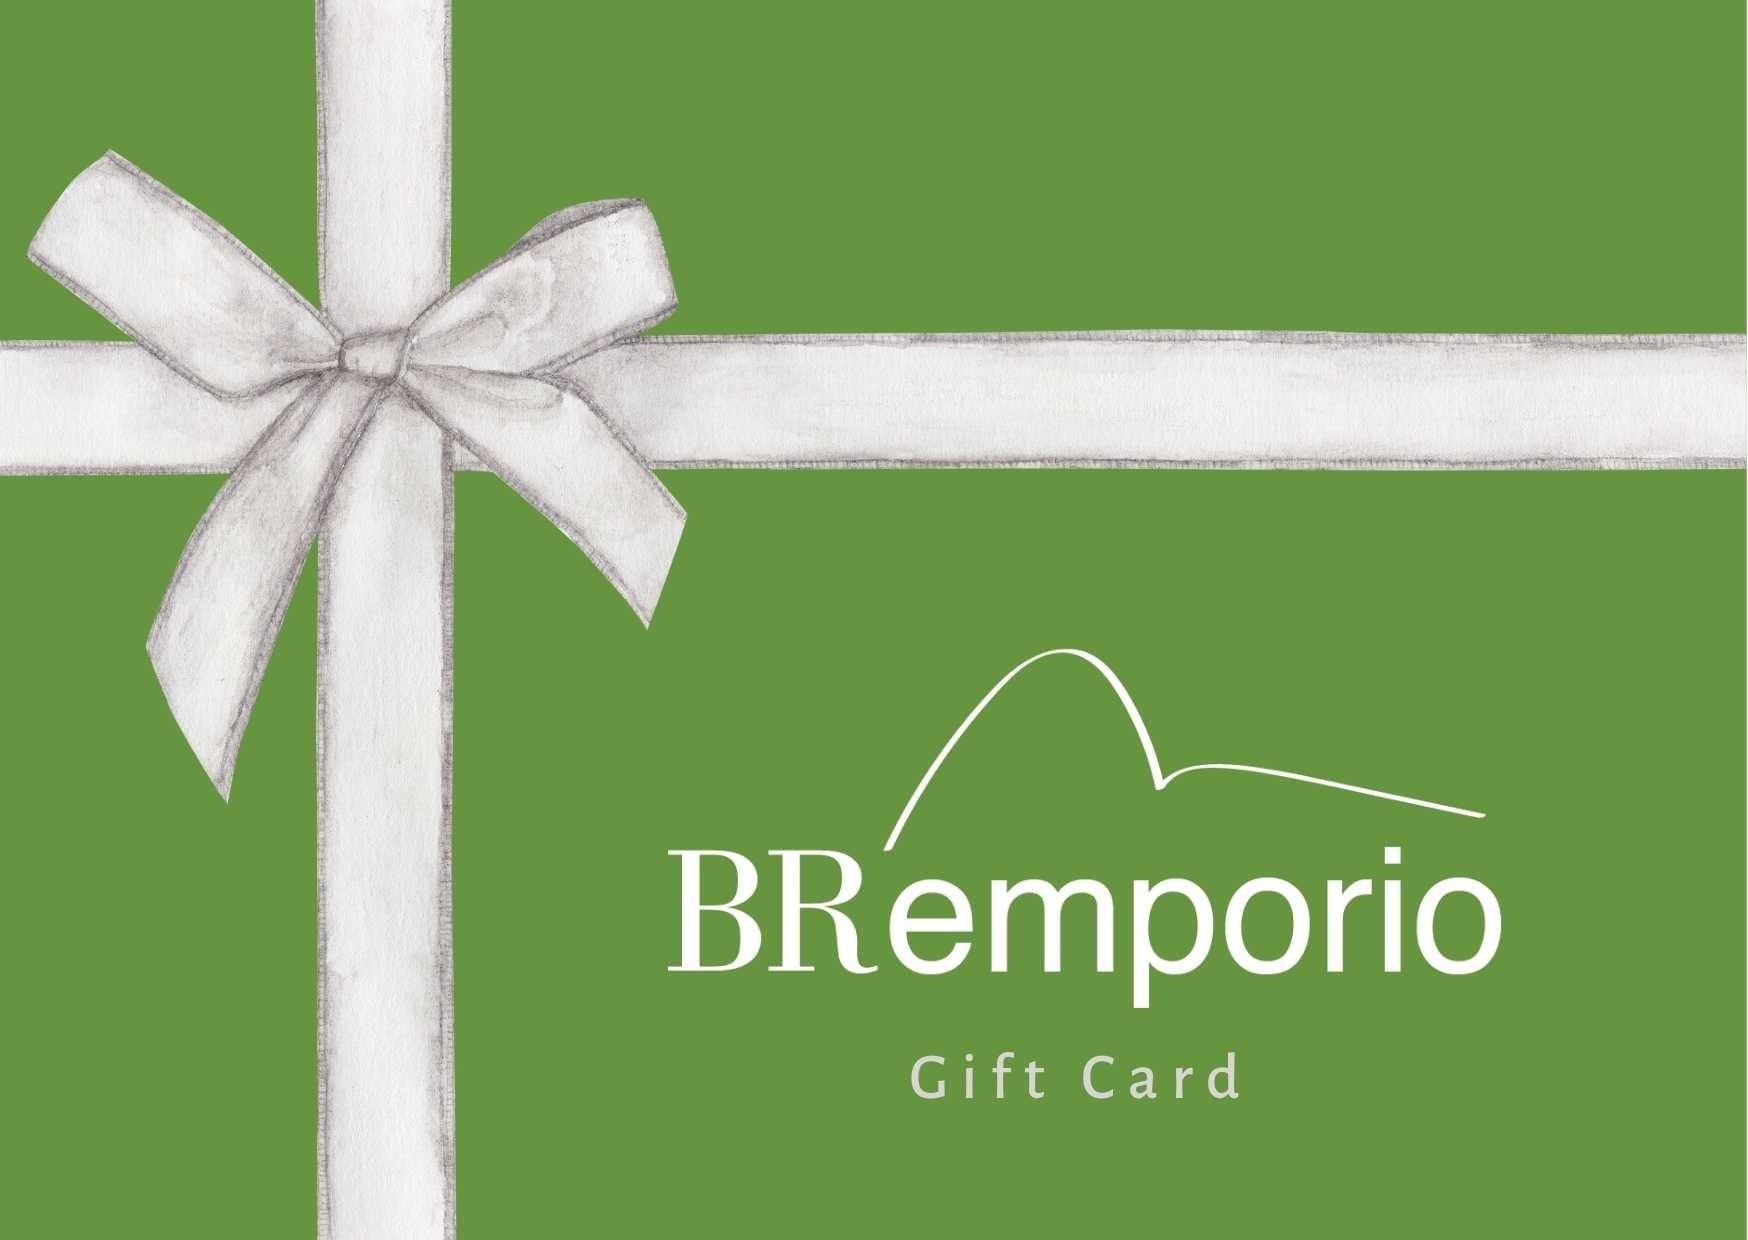 BR Emporio Gift Card - BR Emporio